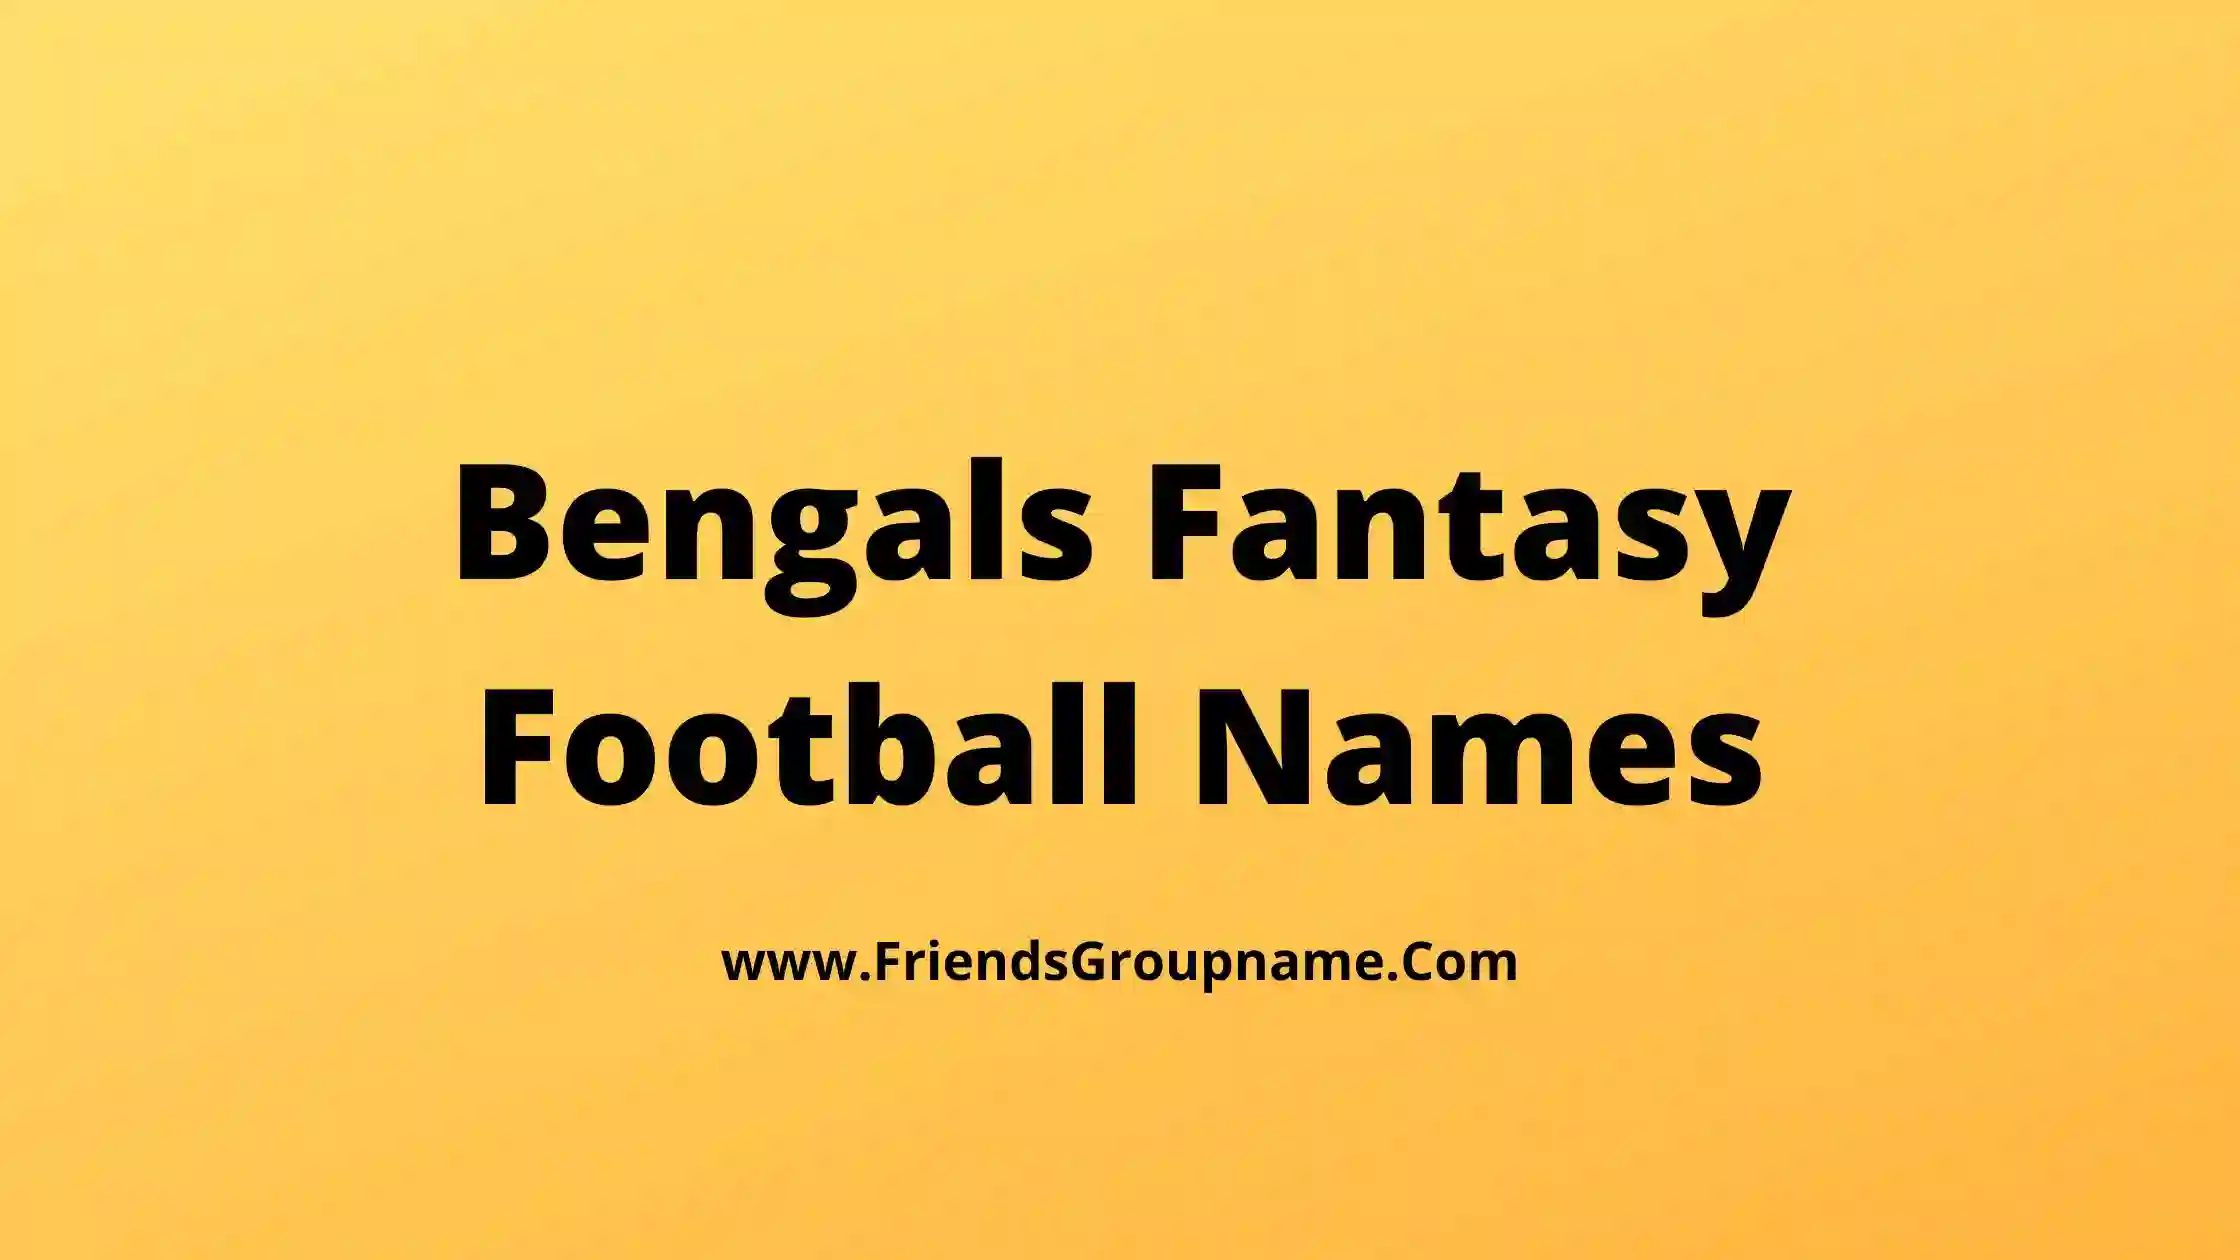 Bengals Fantasy Football Names